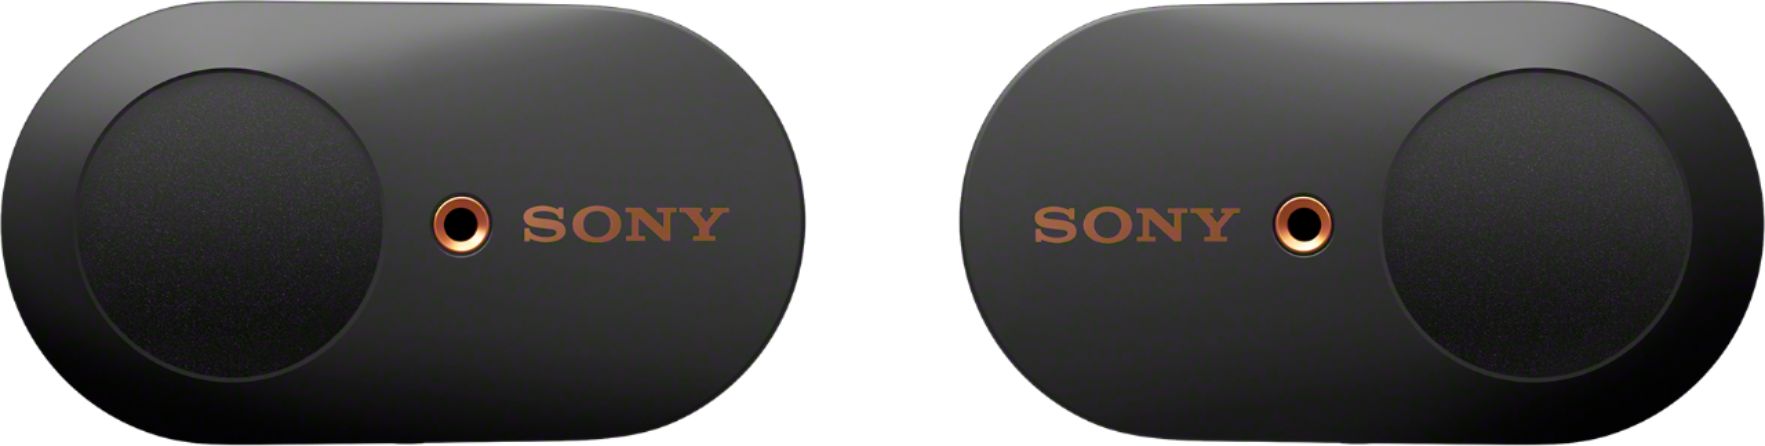 Sony WF-1000XM3 True Wireless Noise Cancelling In-Ear Headphones Black  WF1000XM3/B - Best Buy